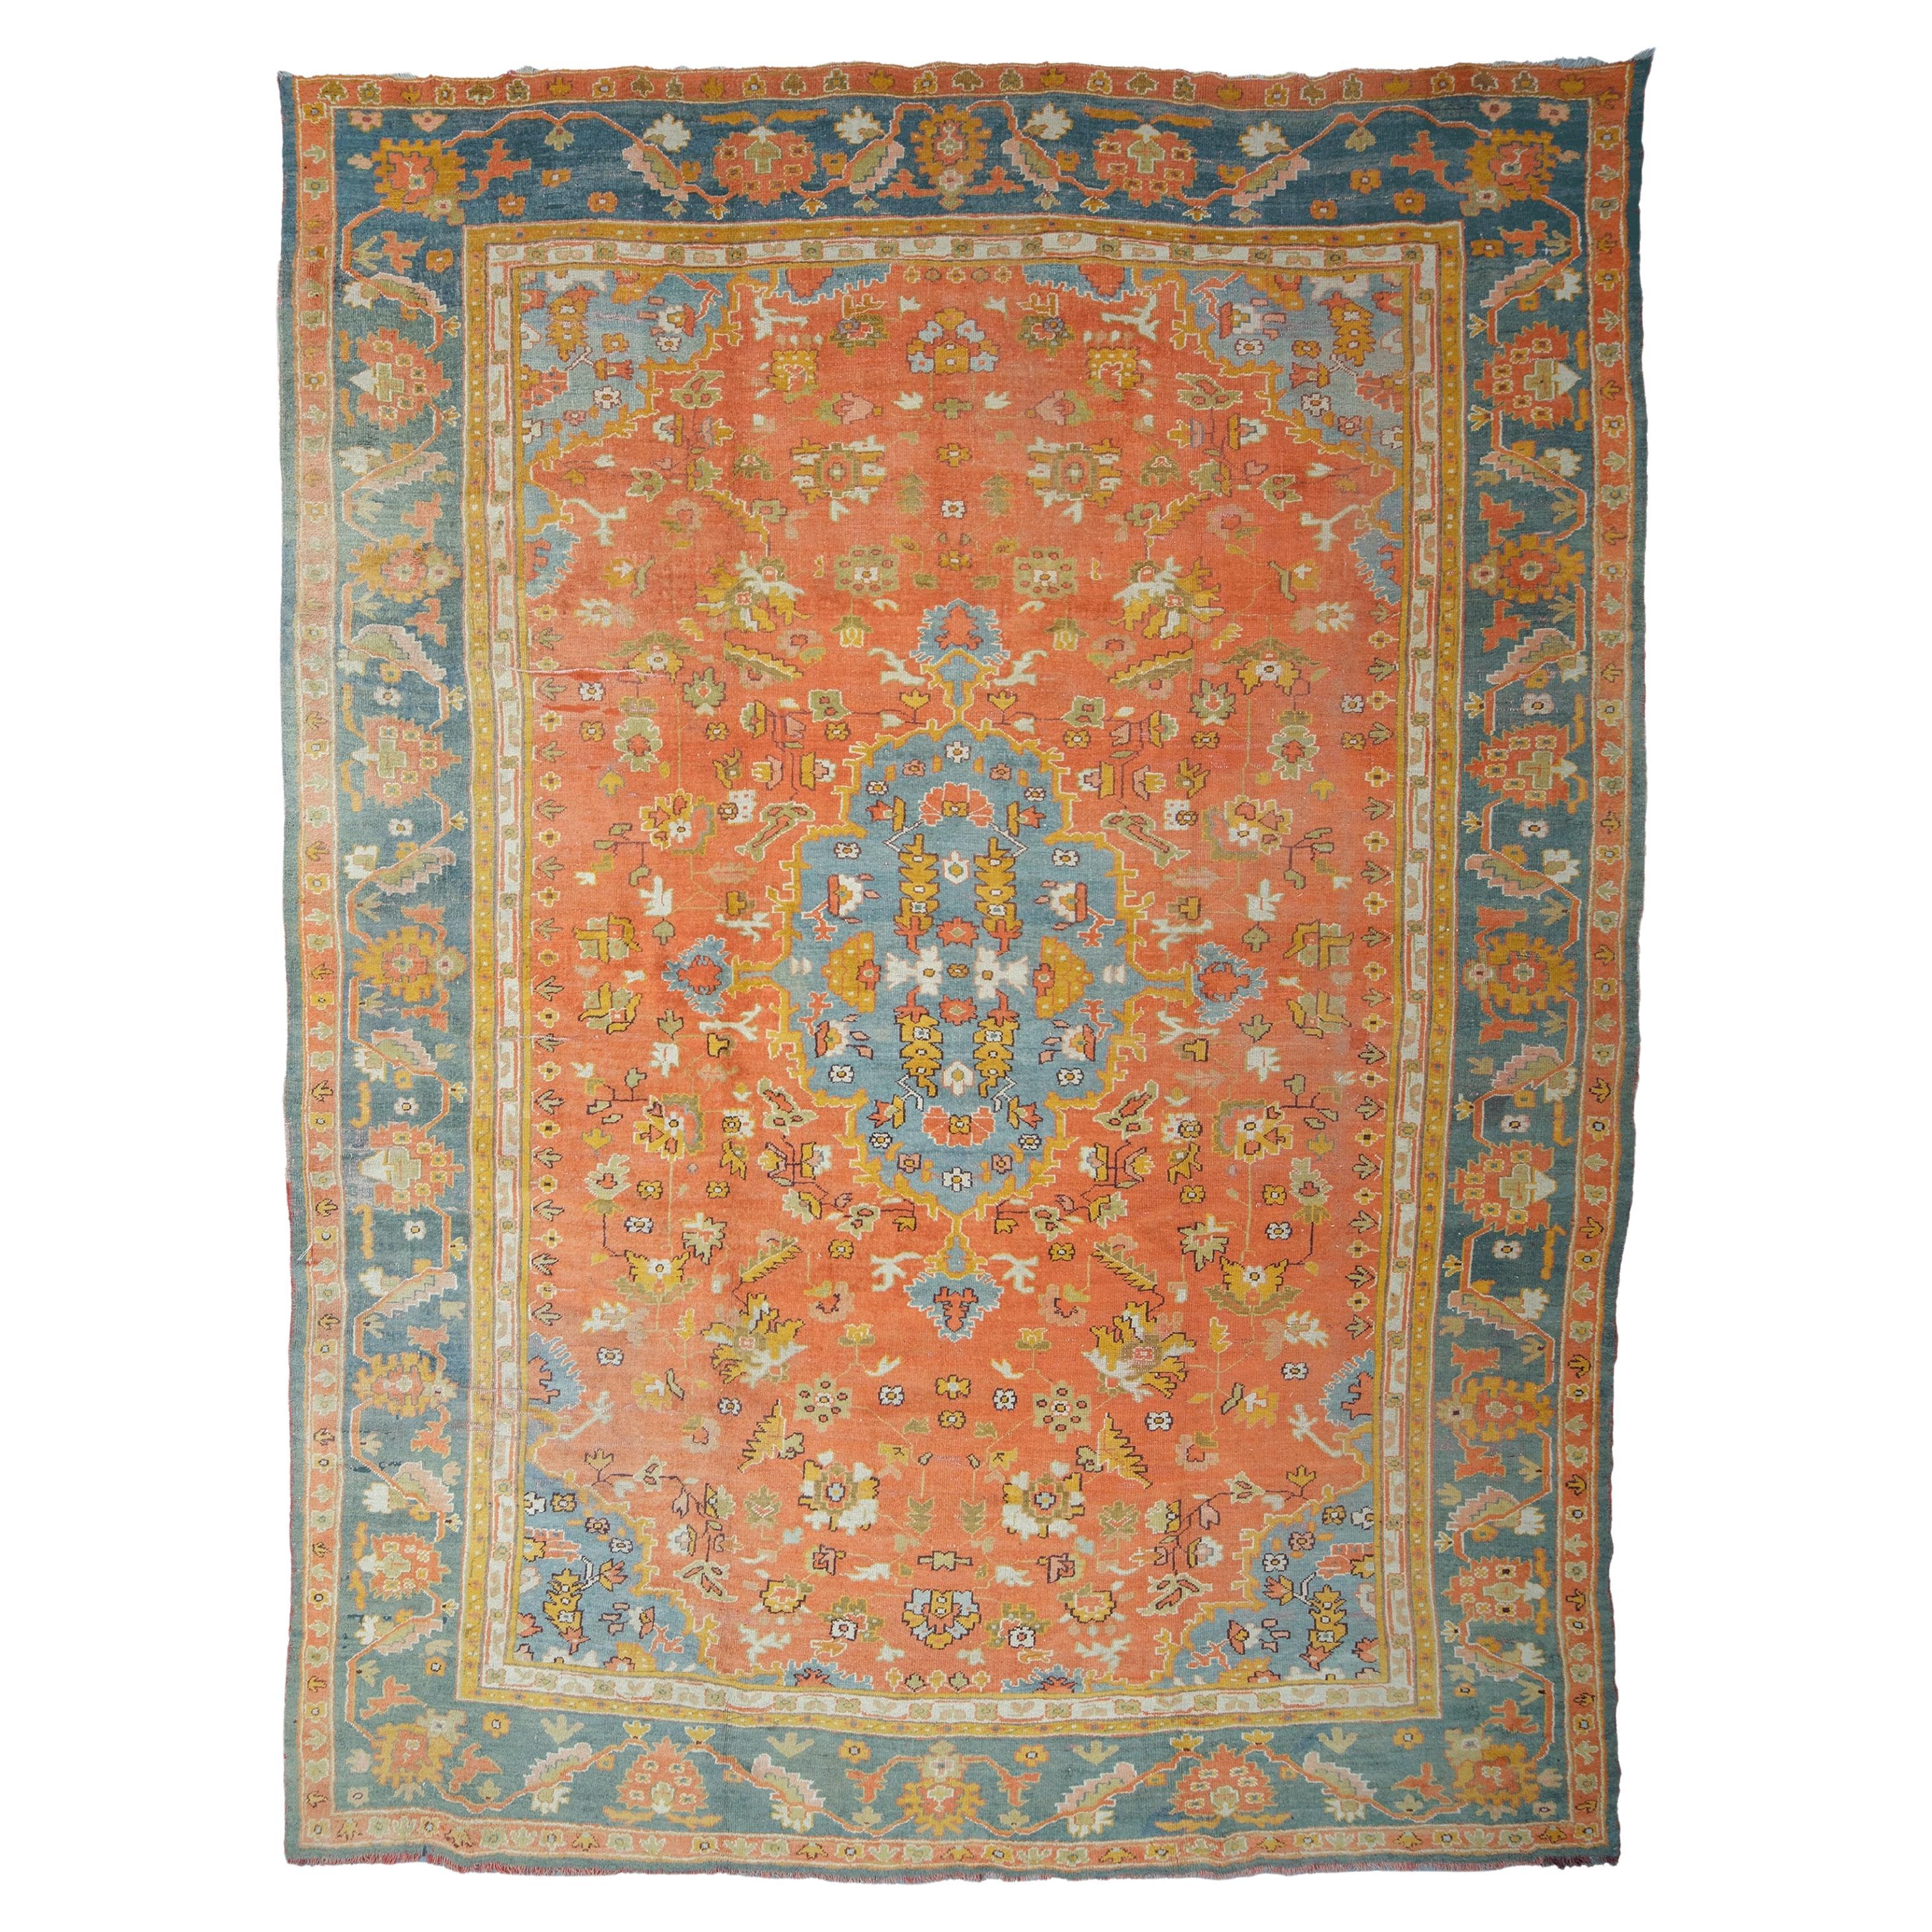 Antique Ushak Carpet - Late of 19th Century Ushak Rug, Antique Rug, Turkish Rug For Sale